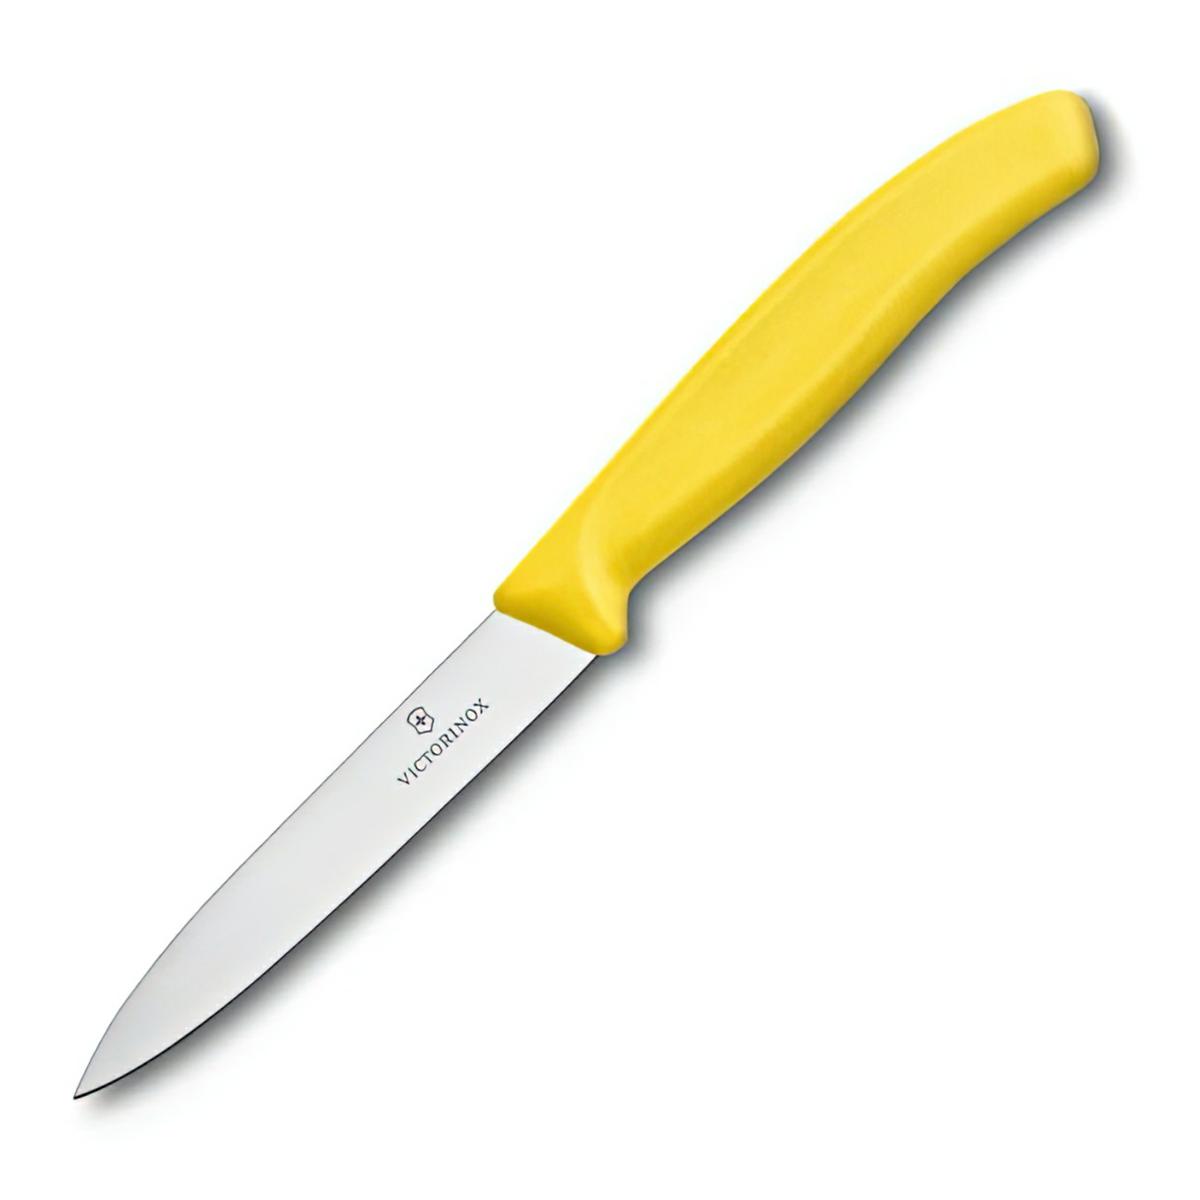 Victorinox nóż do jarzyn 10cm gładki żółty.